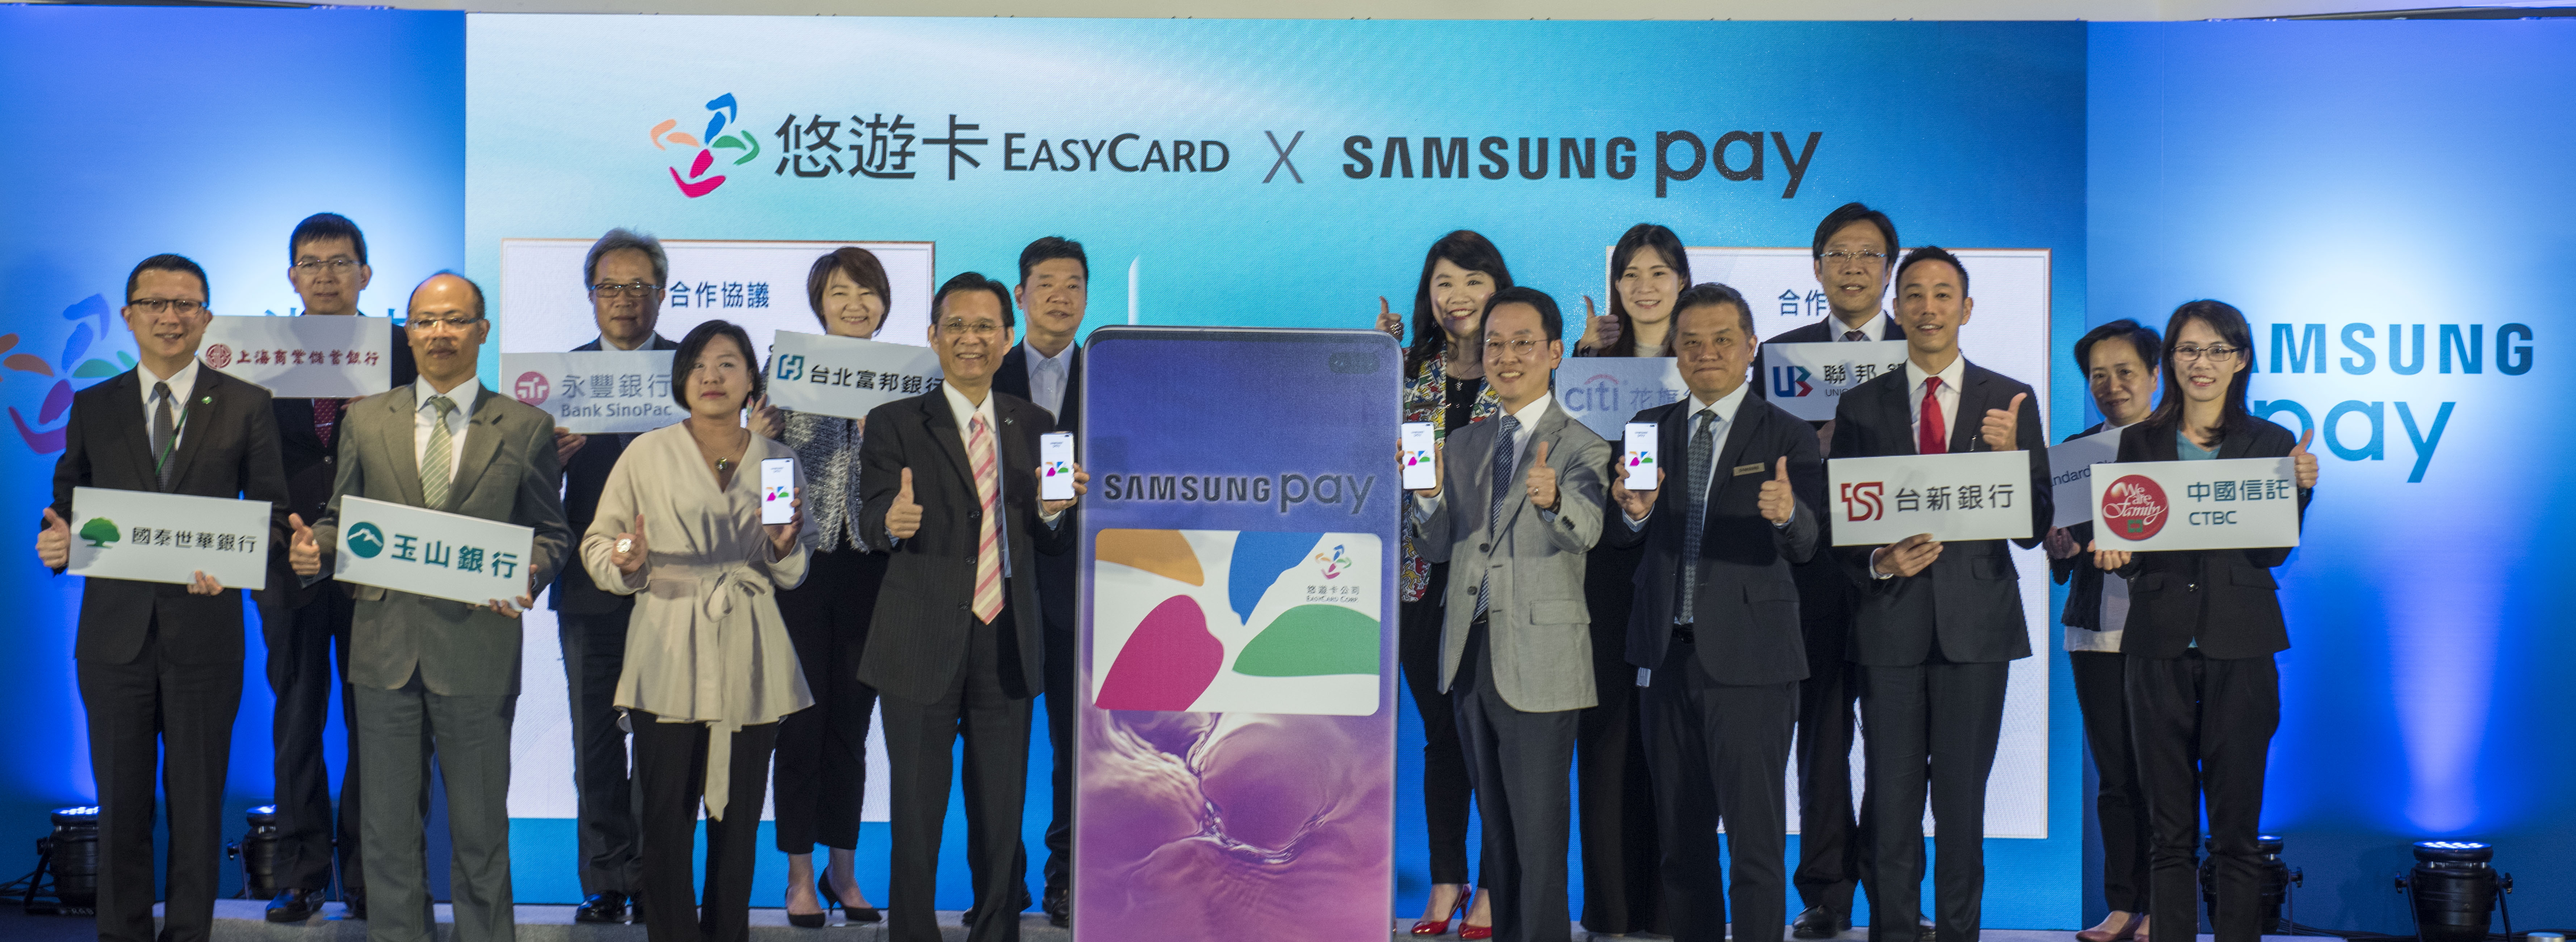 悠遊卡攜手Samsung Pay 行動支付不卡卡